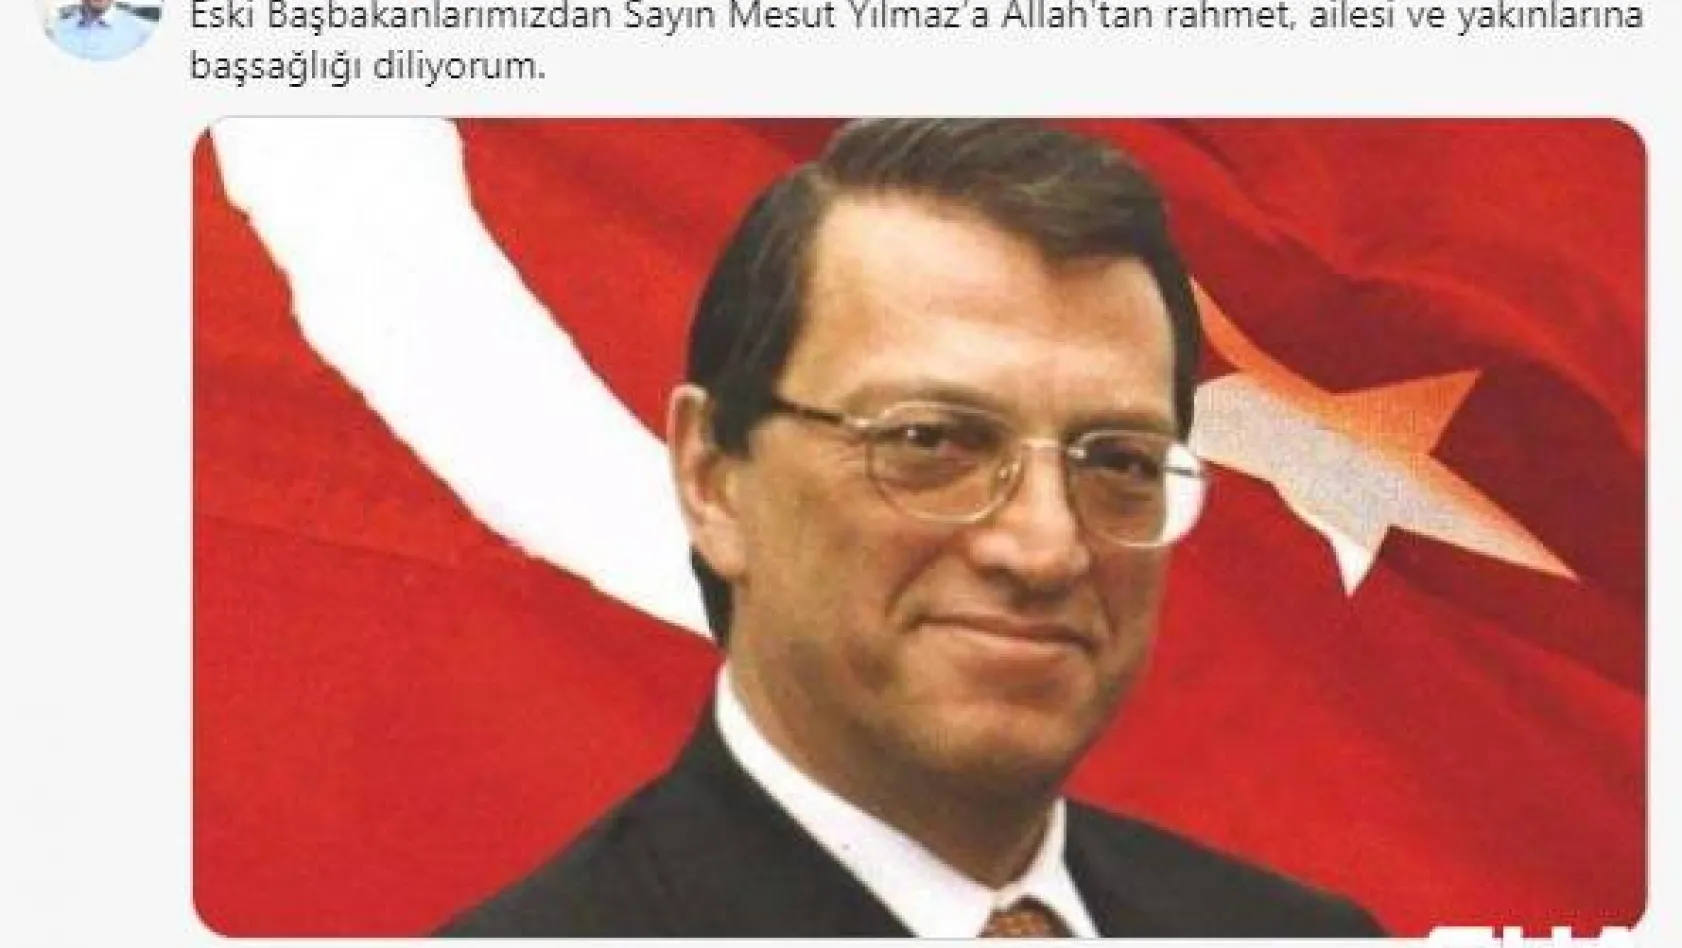 İstanbul Valisi Ali Yerlikaya: 'Mesut Yılmaz'a Allah'tan rahmet, ailesi başsağlığı diliyorum'